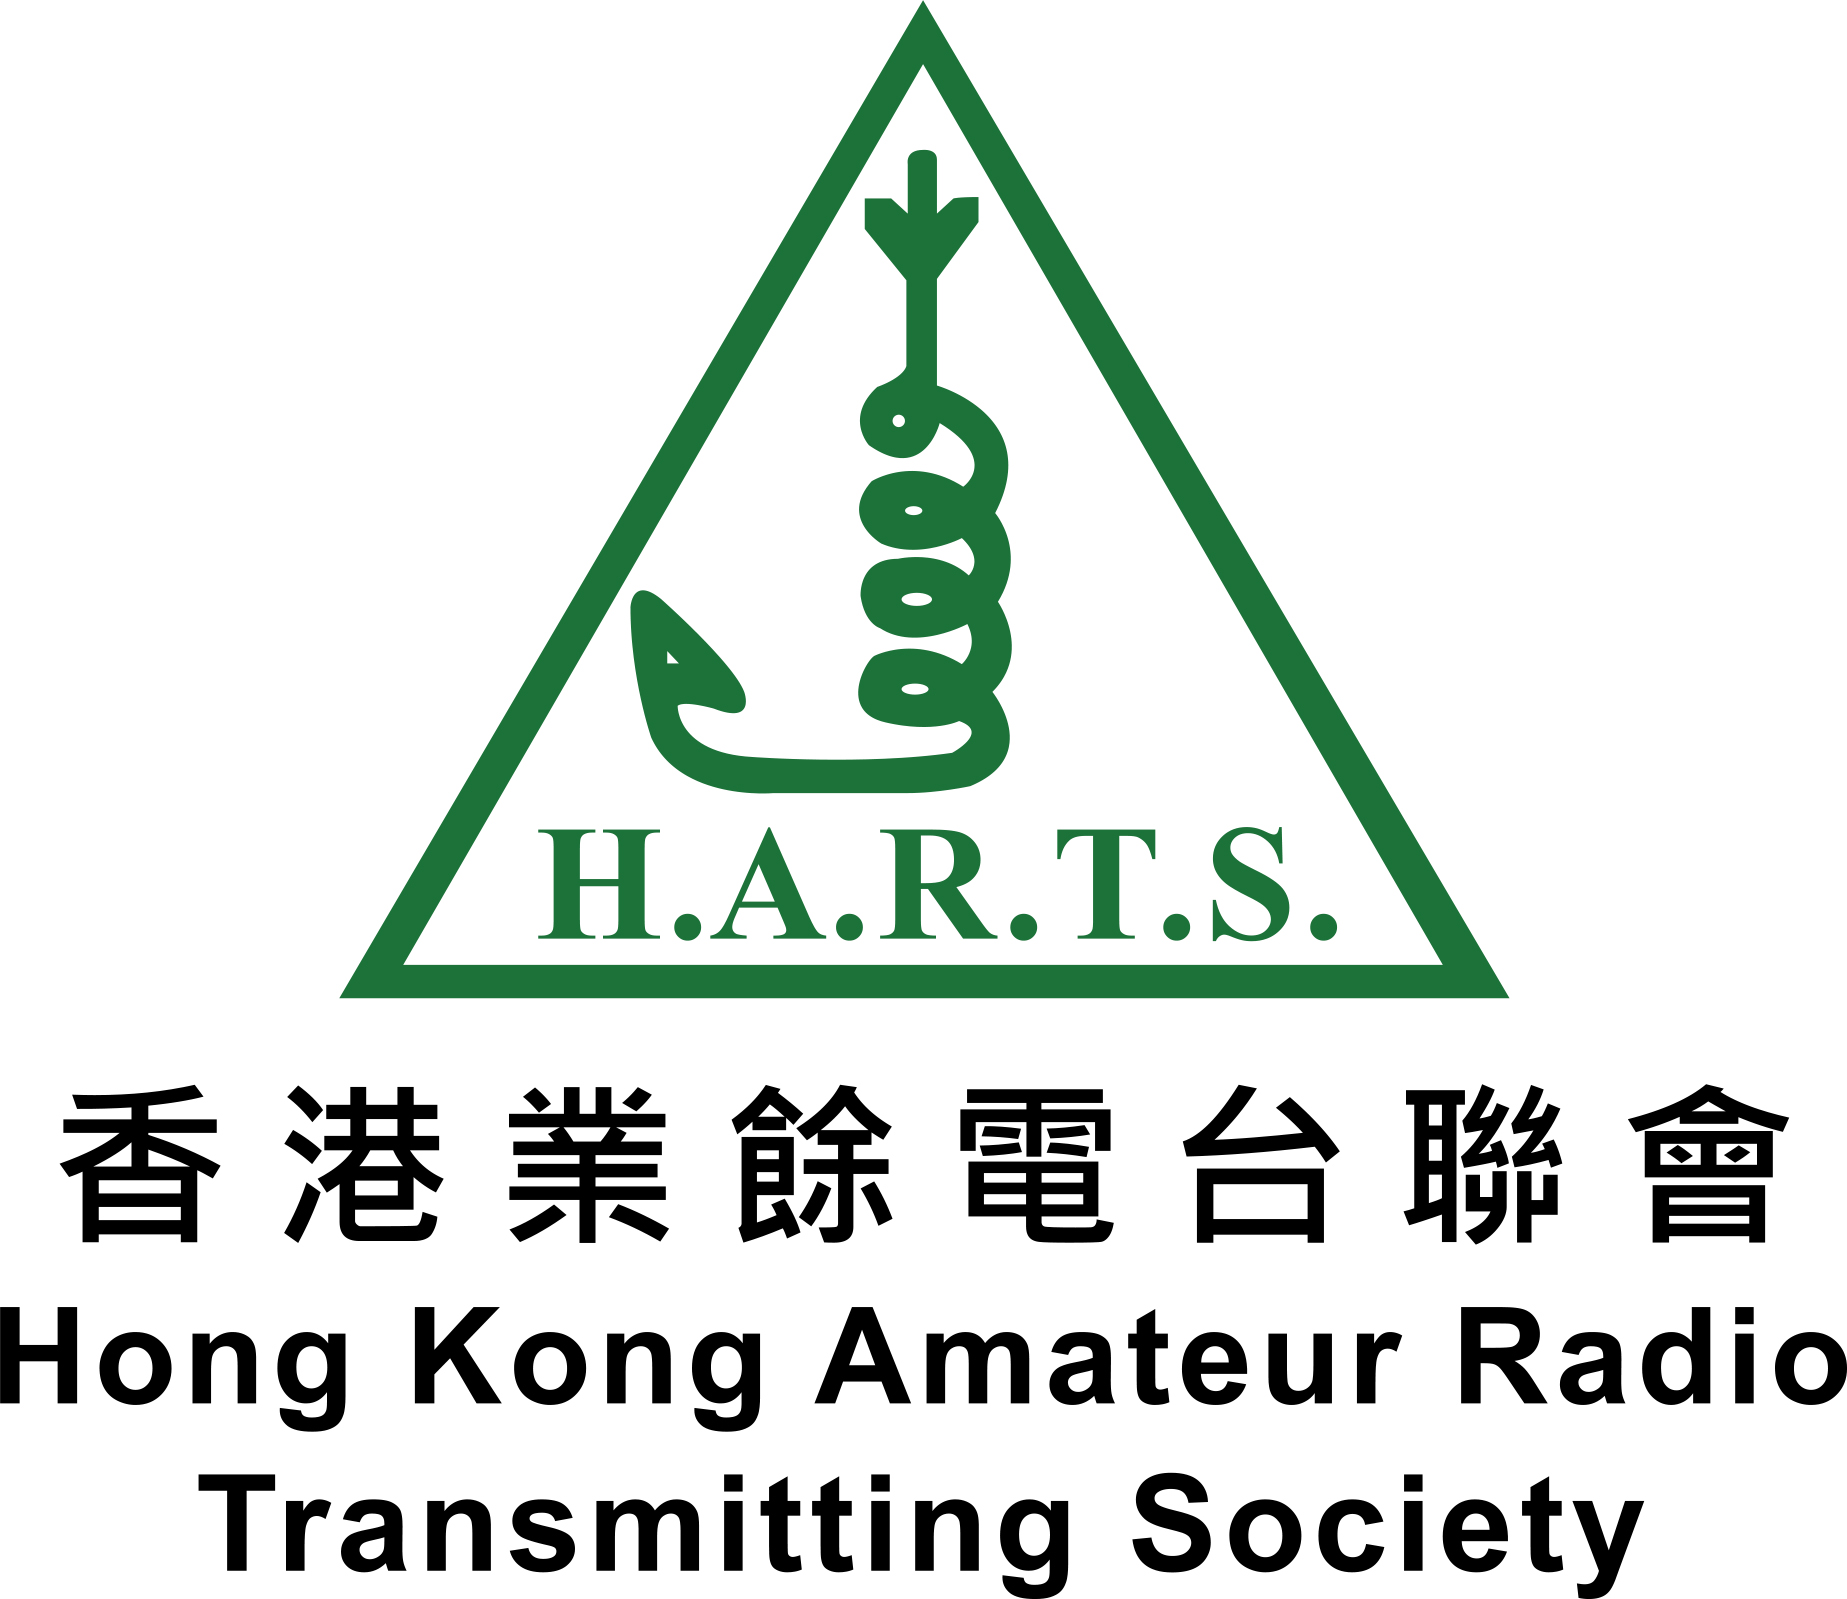 Hong Kong Amateur Radio Transmitting Society Limited